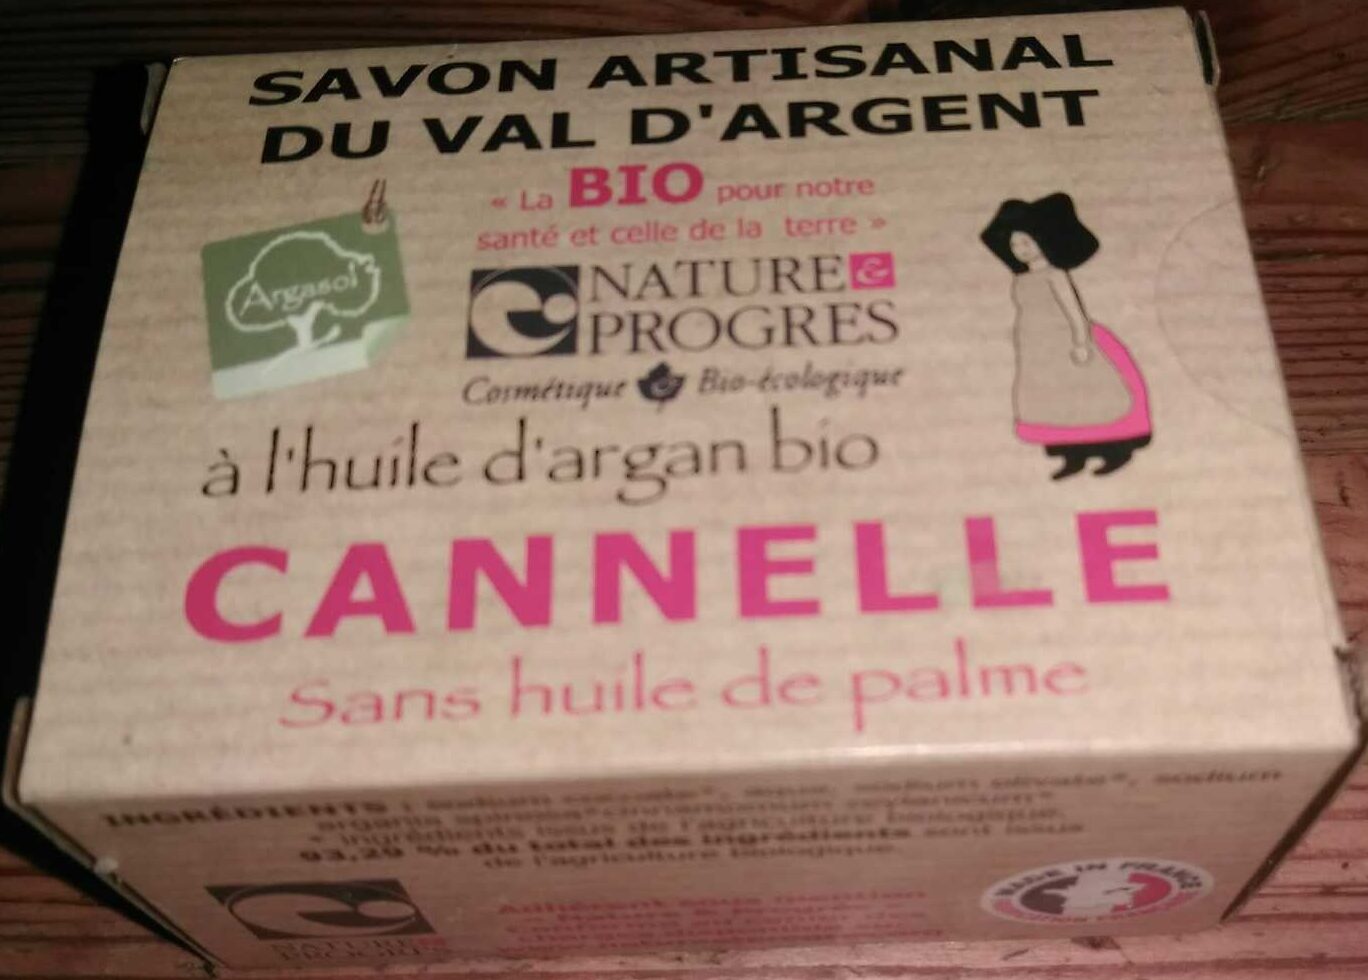 Savon artisanal du Val d'Argent à l'huile d'argan bio - Cannelle - Product - fr